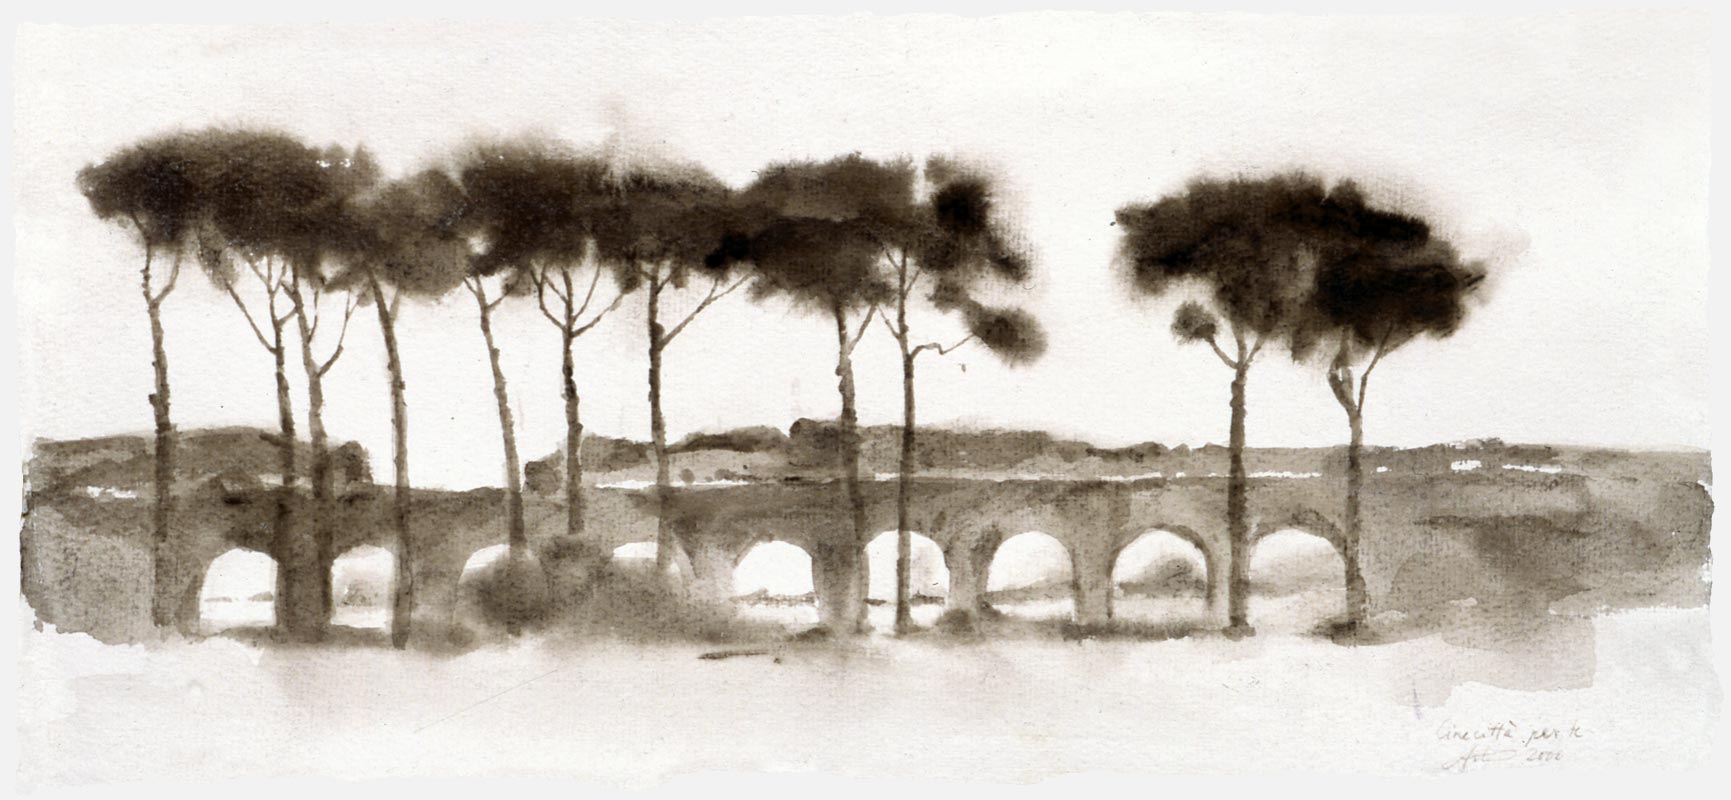 Aqueduct at Cinecittà